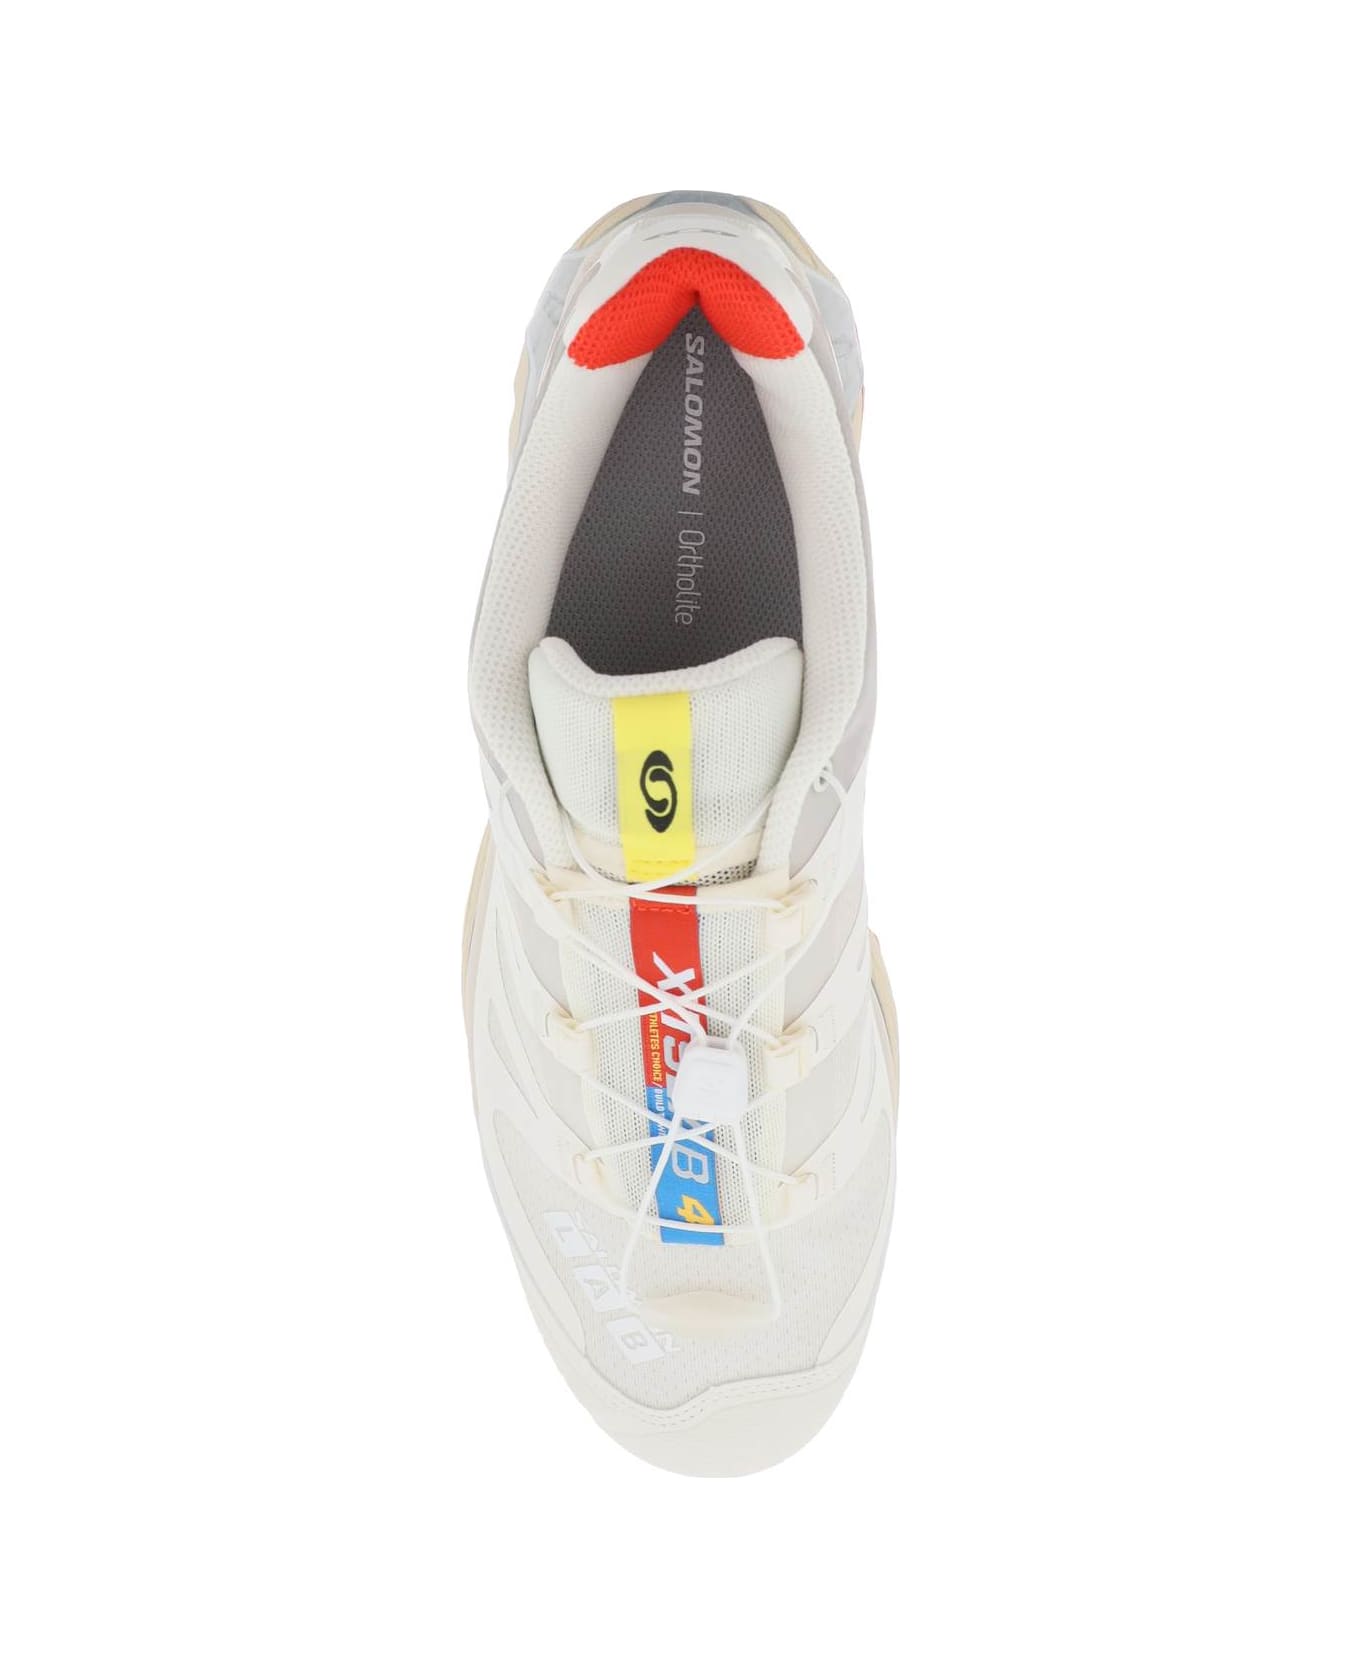 Salomon Xt-4 Og Sneakers - VANILLA ICE FIERY RED WHITE (White)